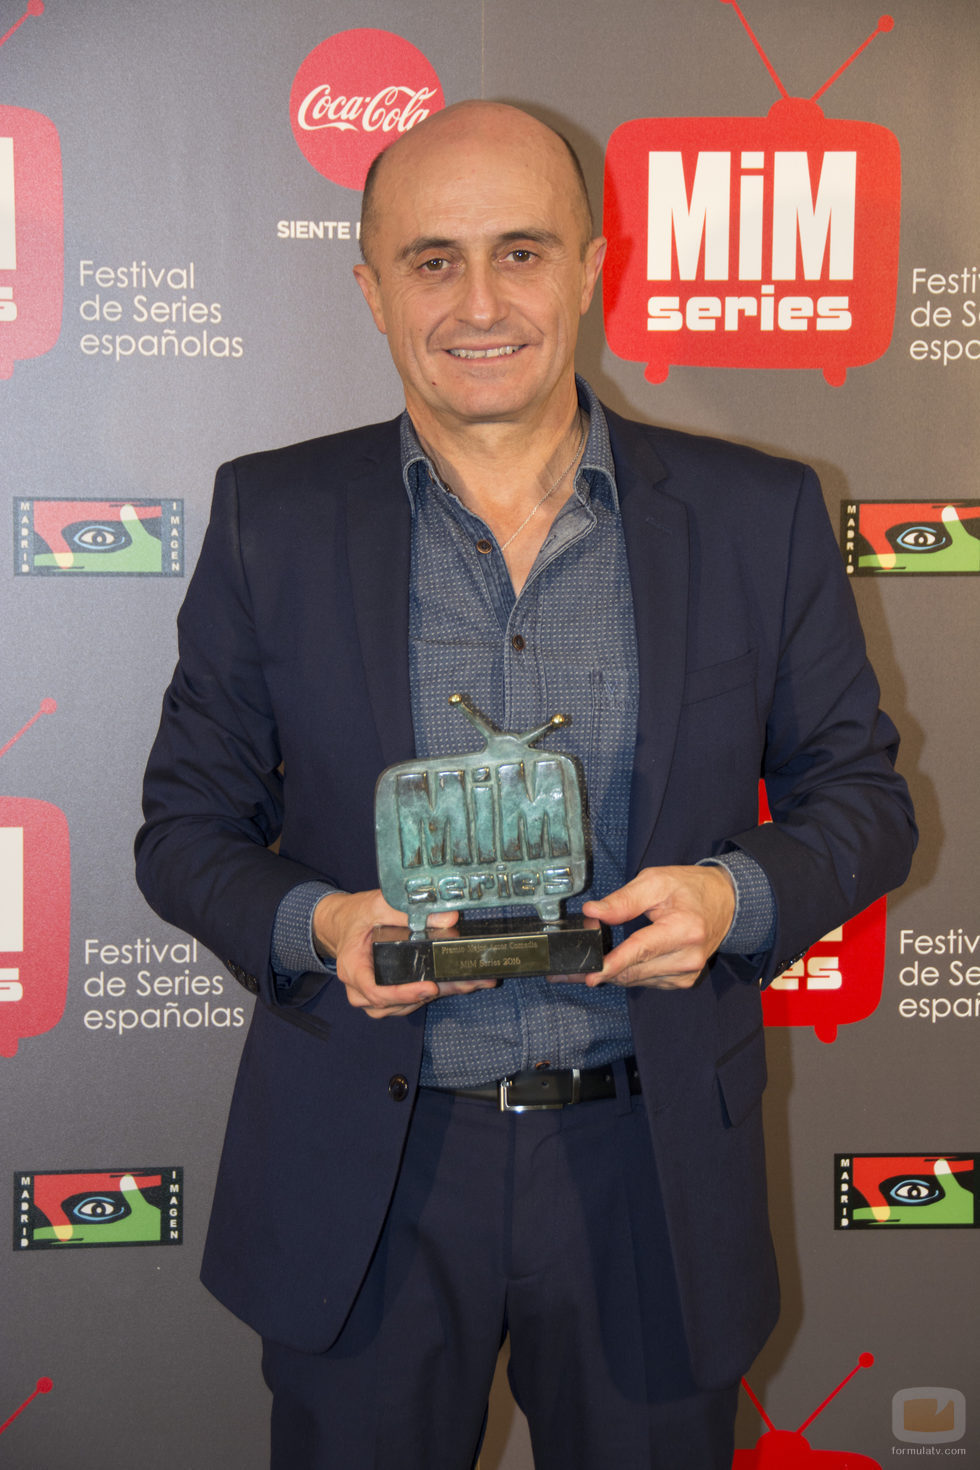 Pepe Viyuela, mejor actor de comedia en los Premios MiM 2016